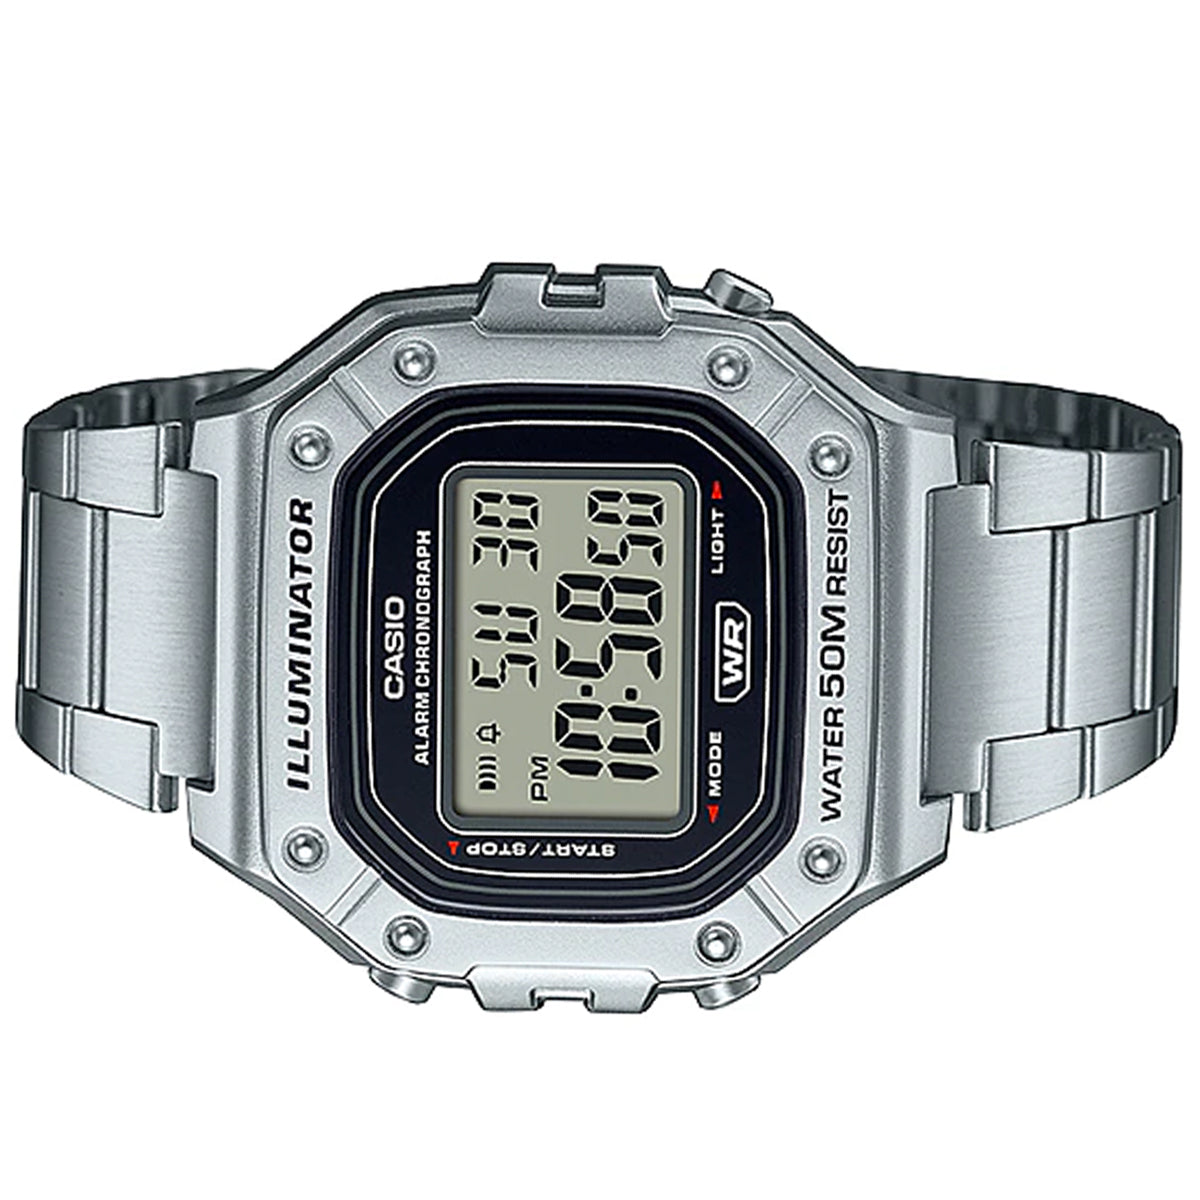 https://www.watchportal.com.ph/cdn/shop/files/casio-w-218hd-1a-silver-stainless-steel-watch-for-men-watchportal-ph-4.jpg?v=1697187975&width=1200